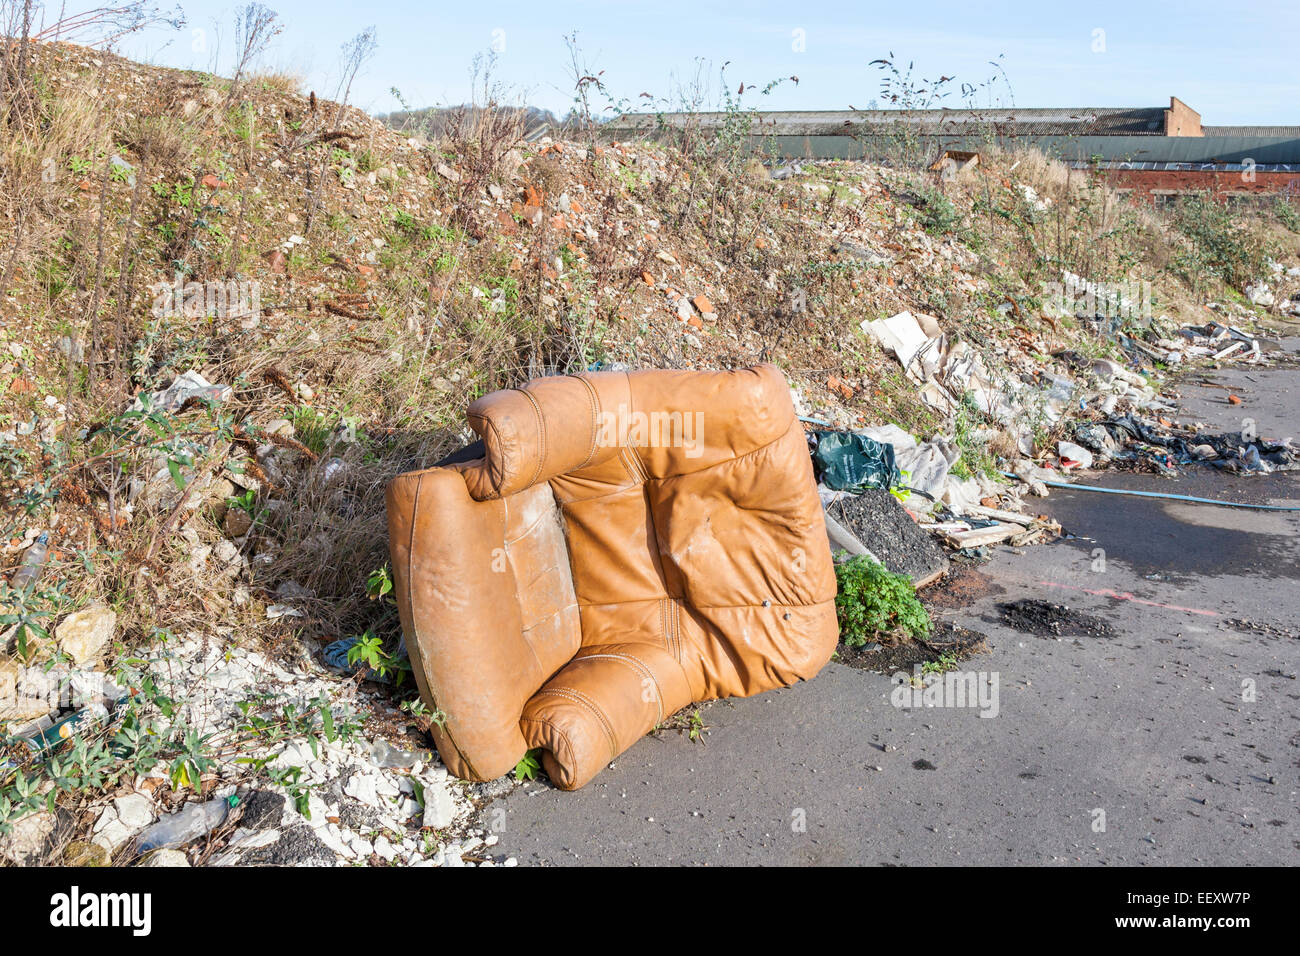 Kippen Fliegen. Die illegale Verklappung von einem Ledersessel, Abfall und anderen Müll auf einem Gehsteig am Rande einer Stadt. Nottingham, England, Großbritannien Stockfoto